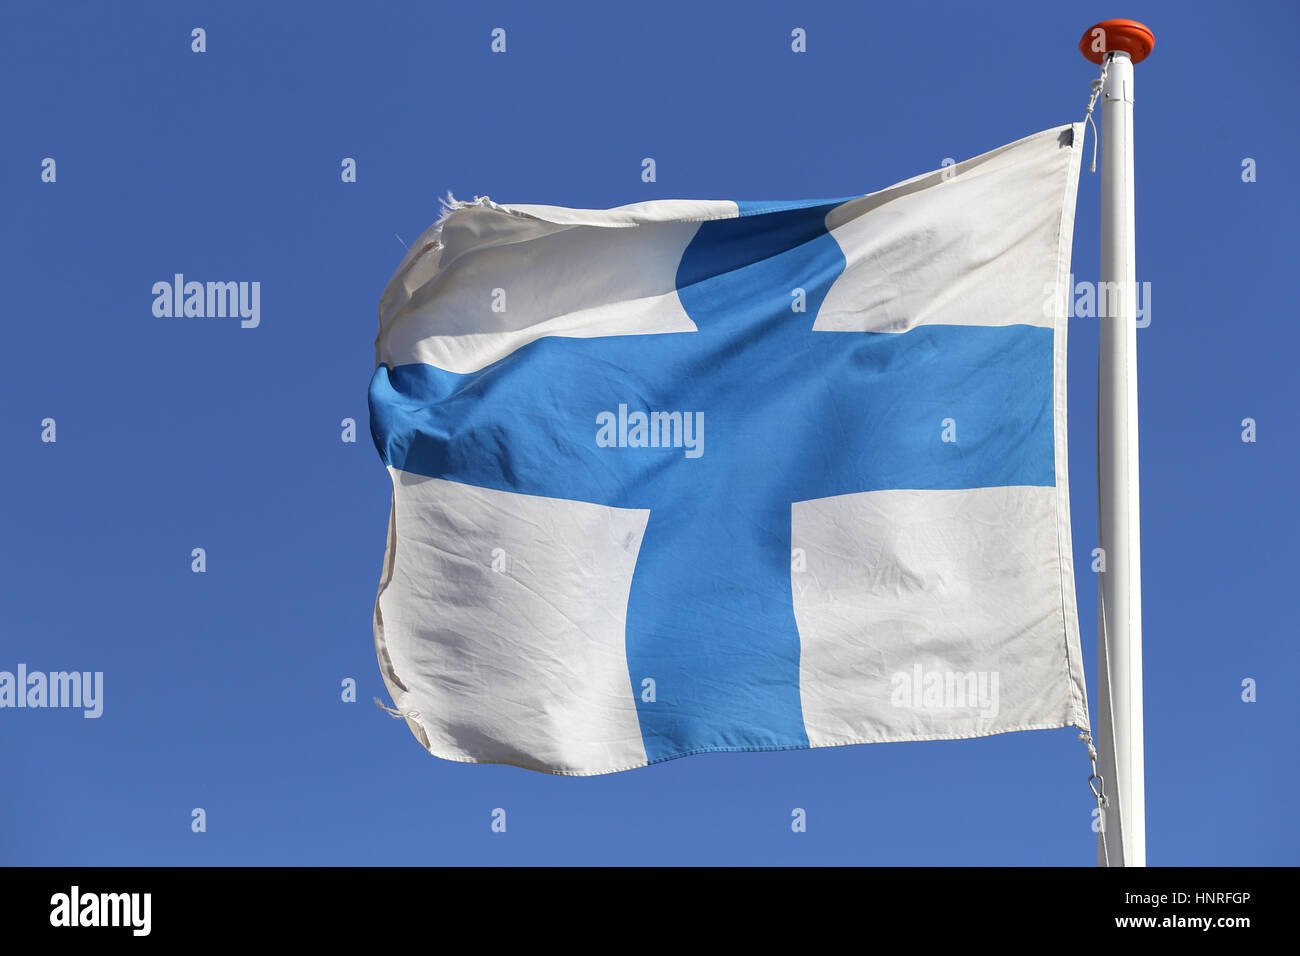 Drapeau Finlandais volant dans le vent Banque D'Images